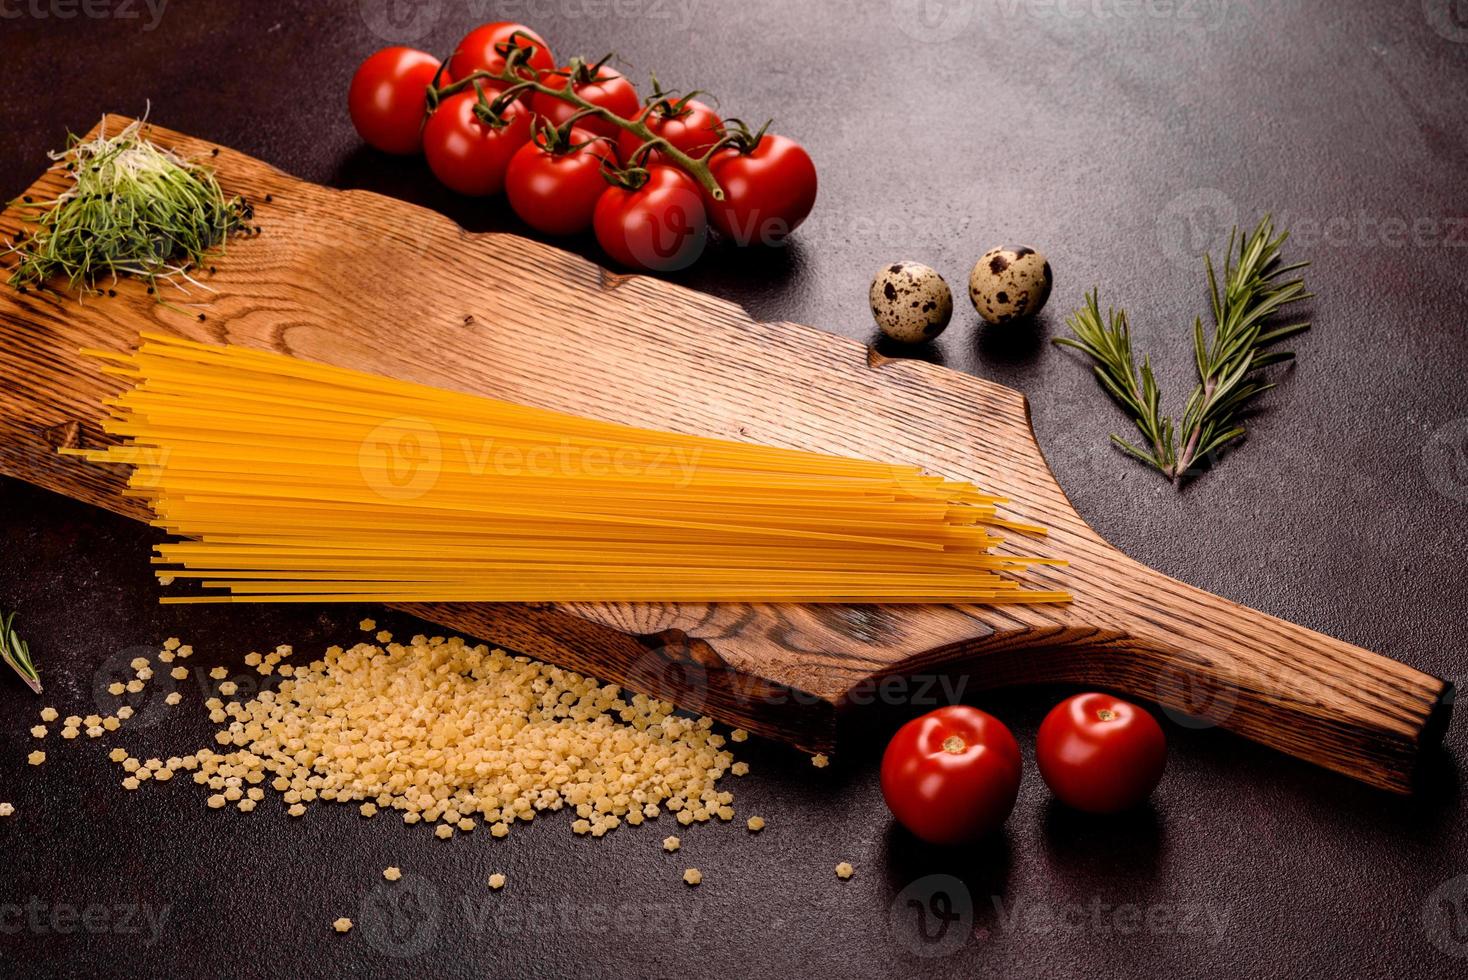 ingredienti per cucinare la pasta su uno sfondo scuro foto